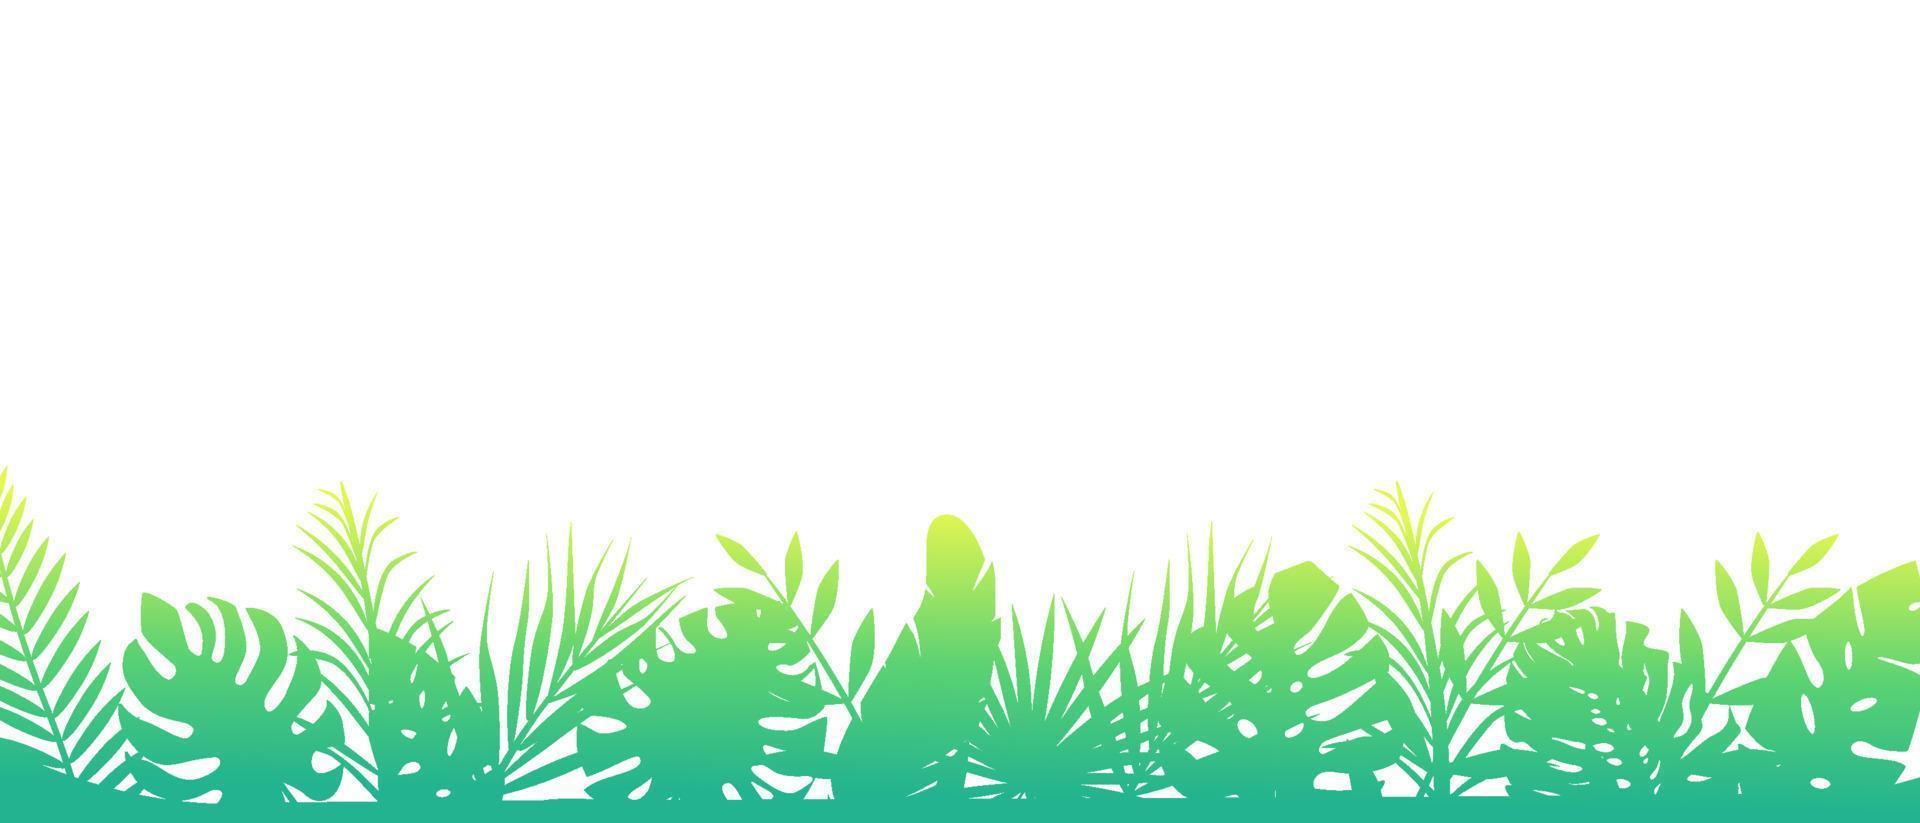 grüner morgenfarnhintergrund. horizontale Dekoration Regenwälder Blumen exotischer Hintergrund mit eleganten liebevoll grünen Blättern Farn wilde Naturwiese in Strahlen der aufgehenden Vektorsonne. vektor